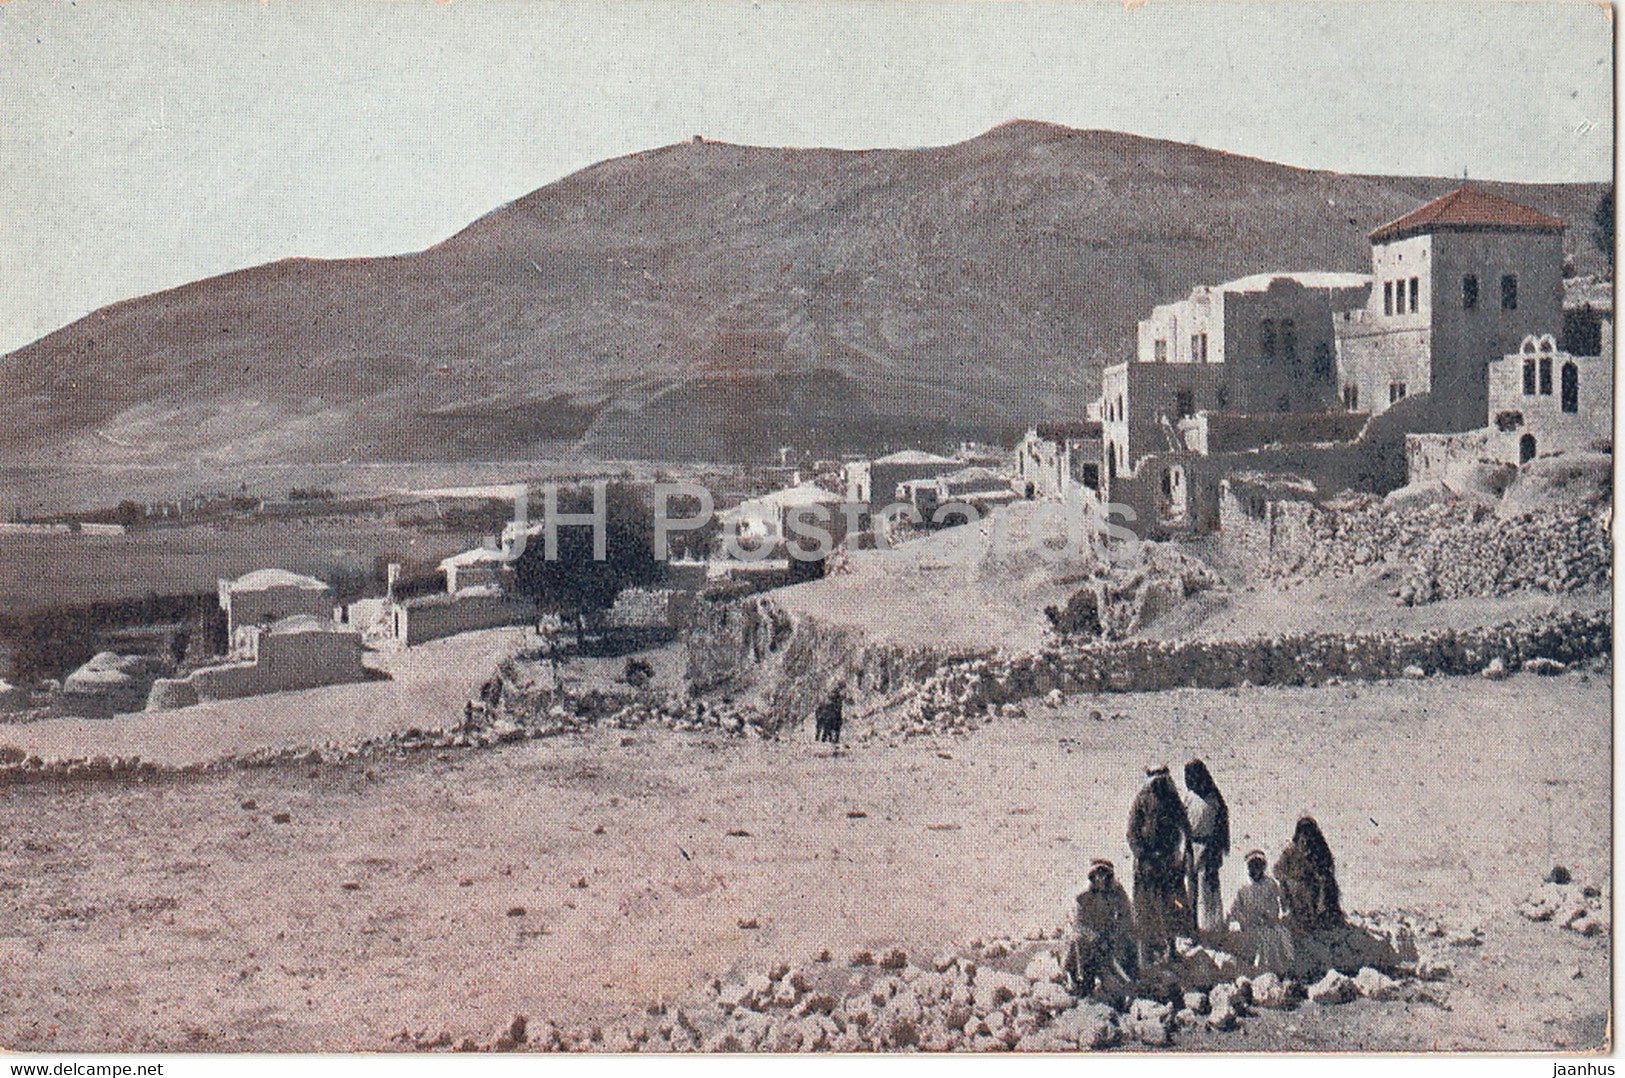 Village of Sychar & Mt Gerizim - old postcard - Israel - unused - JH Postcards